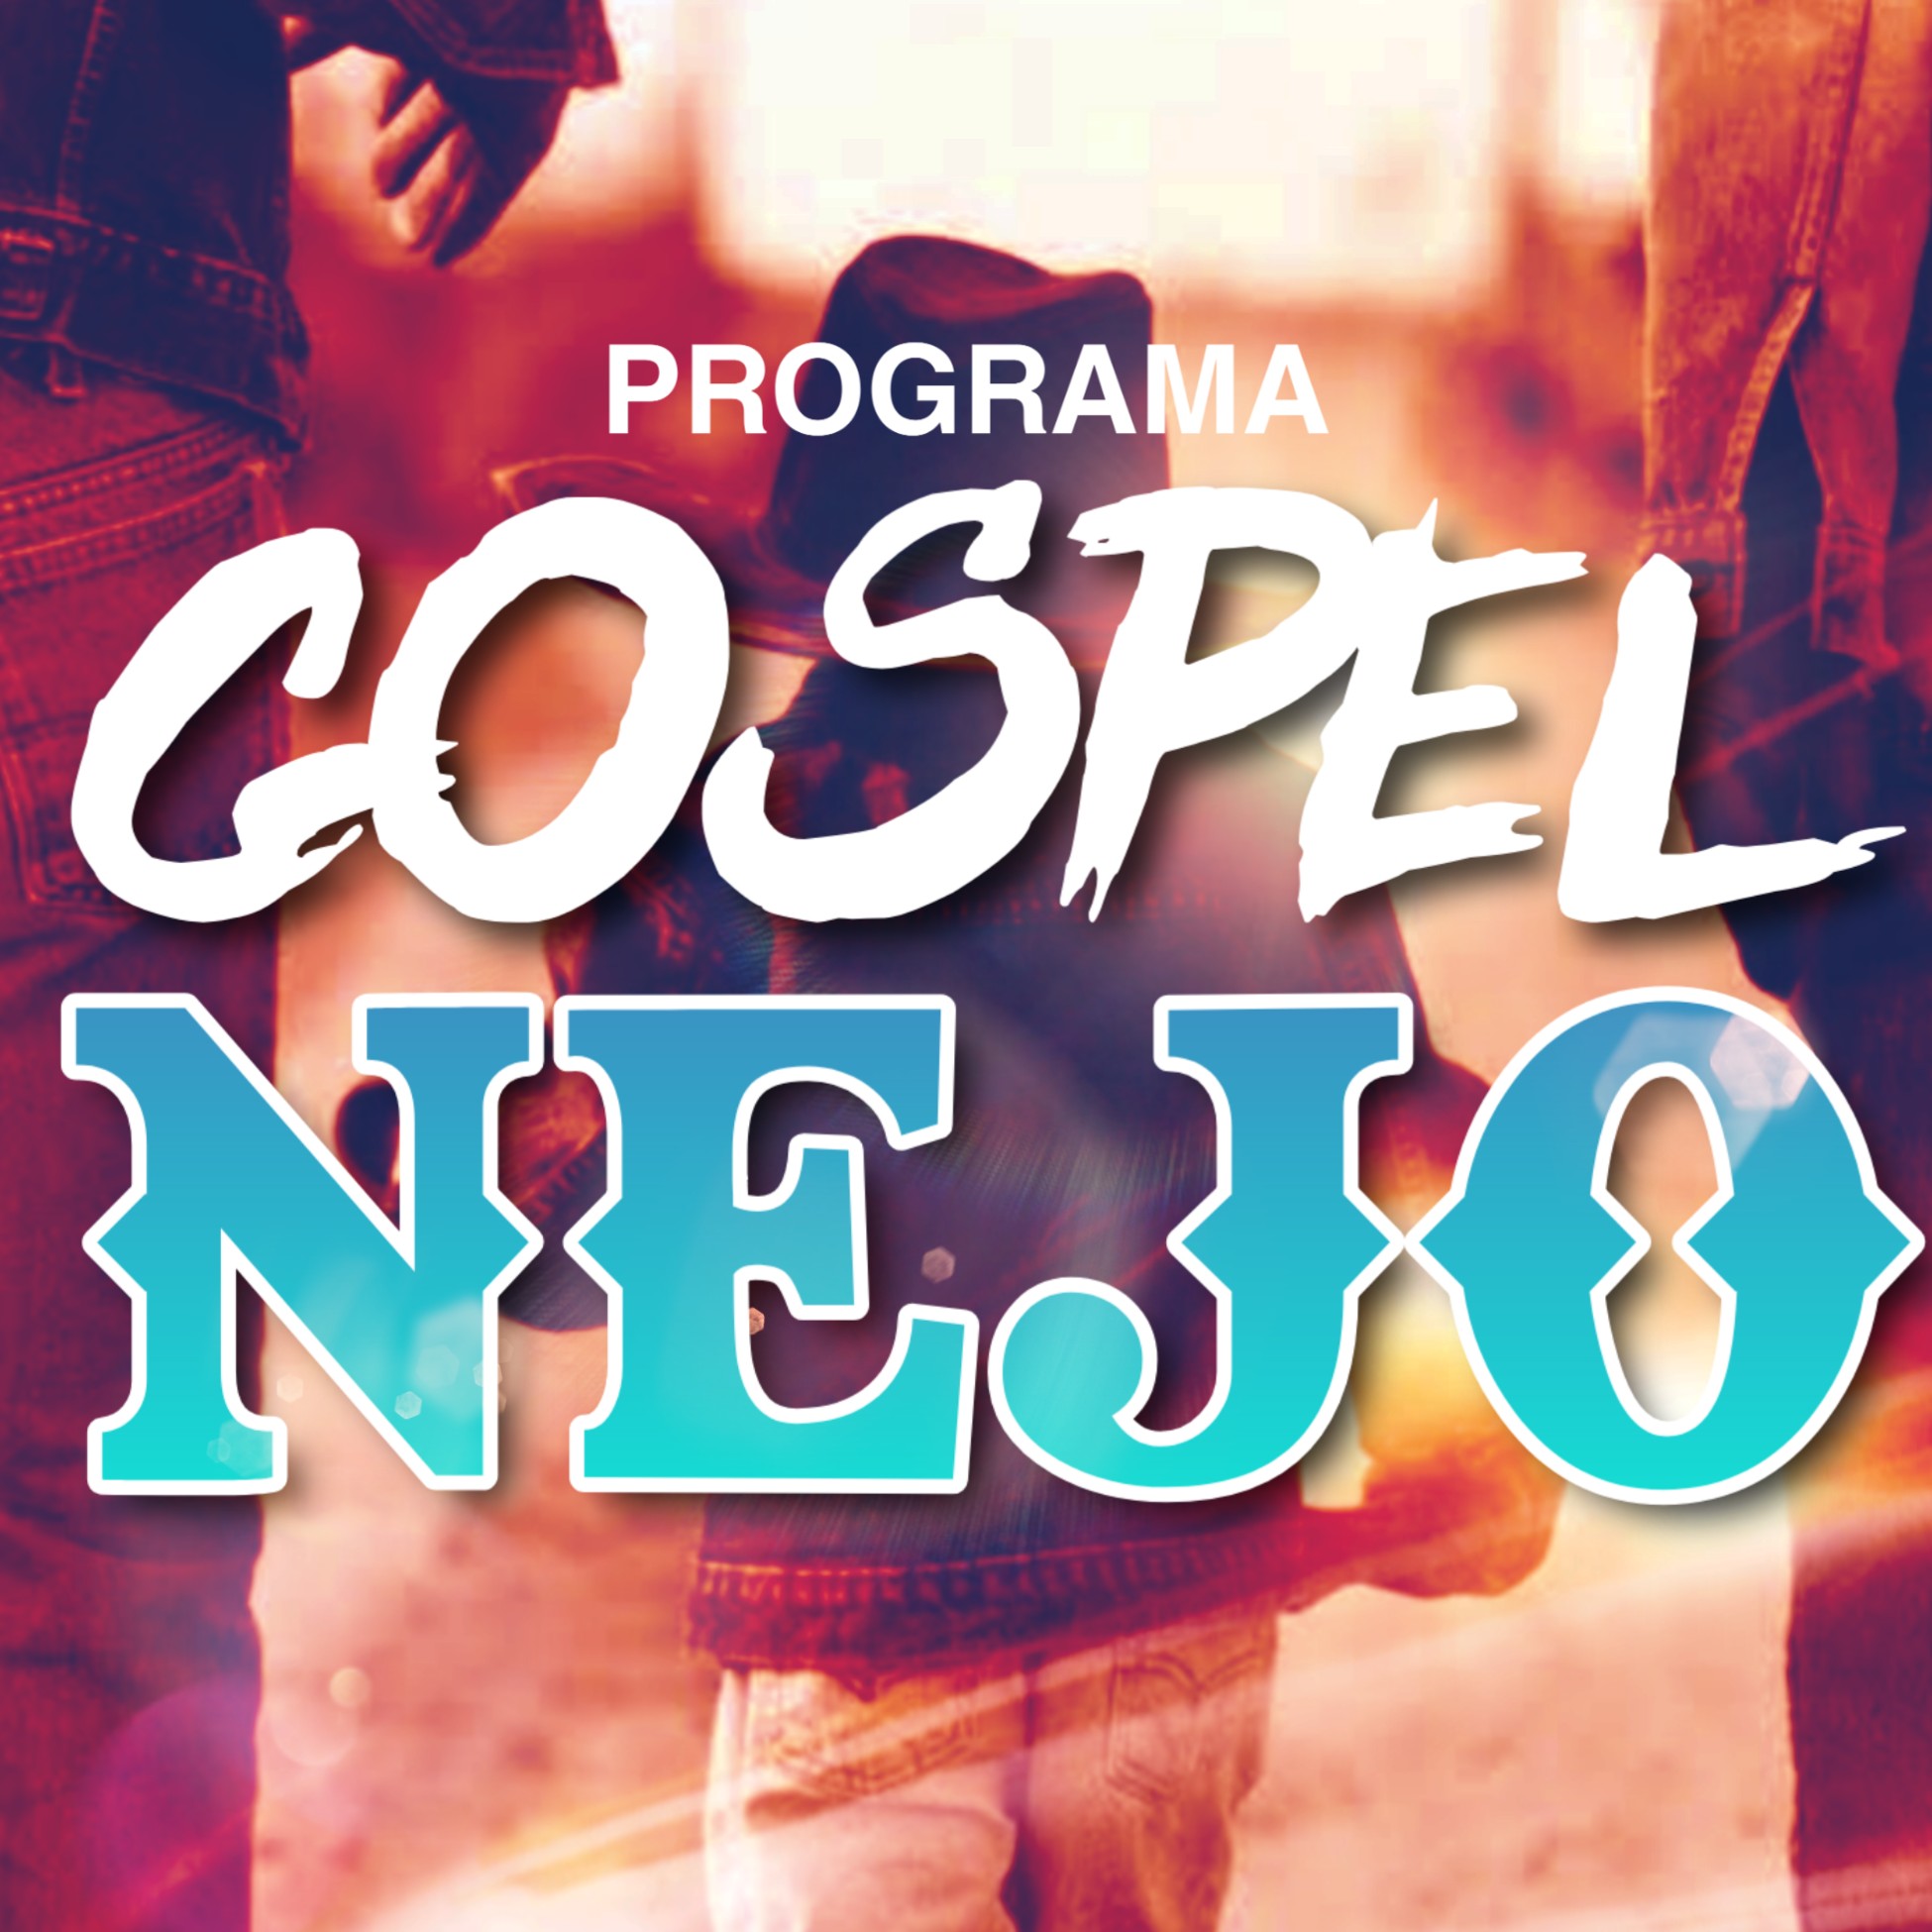 Programa Gospel Nejo